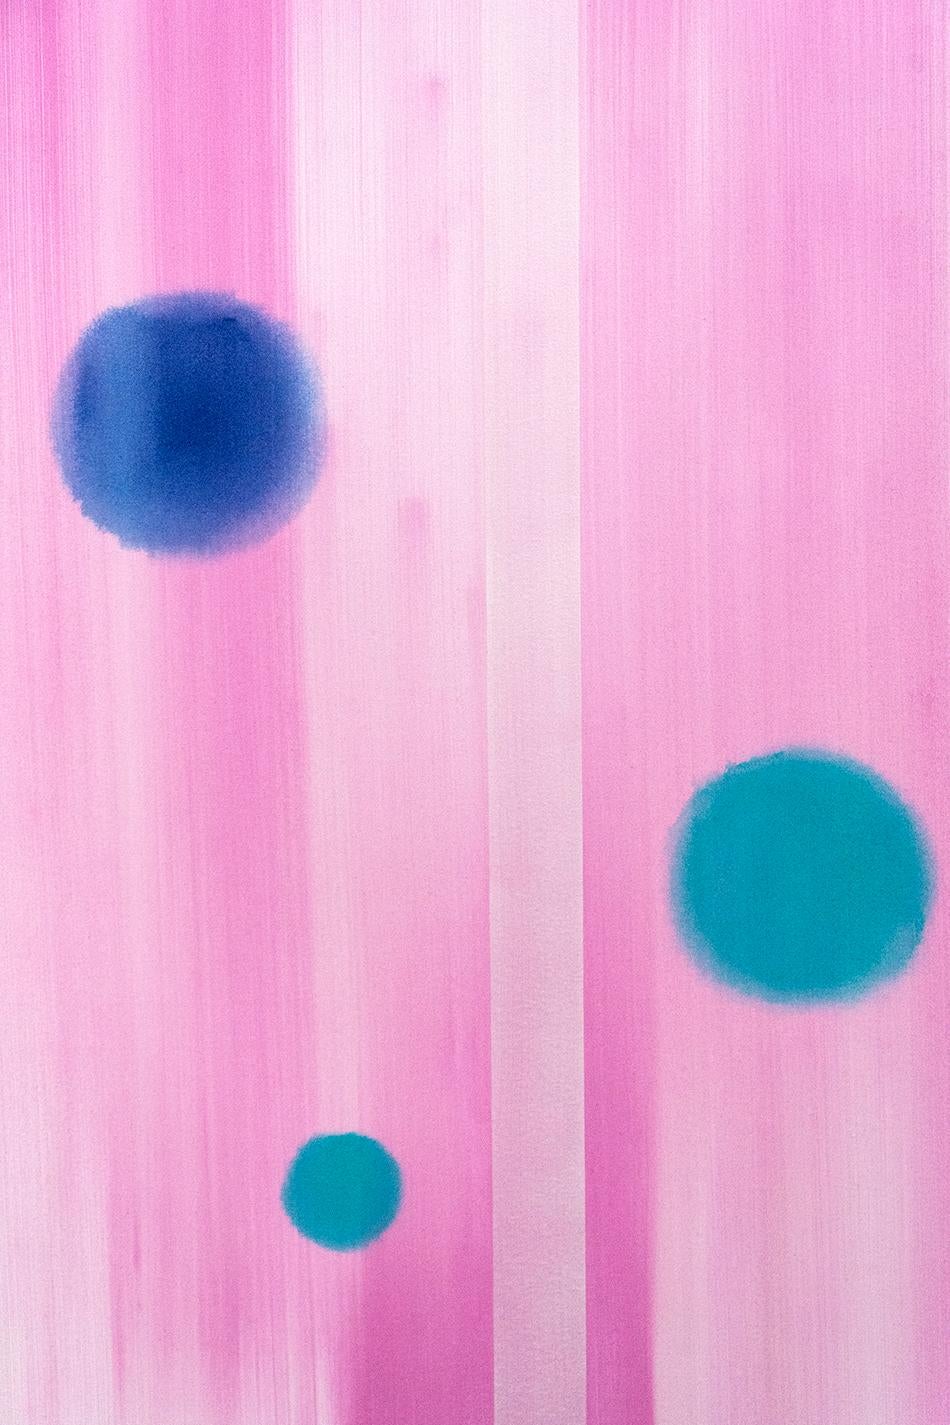 In Other Worlds - rosa, marineblaue und türkisfarbene Abstraktion, Acryl auf Leinwand (Zeitgenössisch), Painting, von Milly Ristvedt